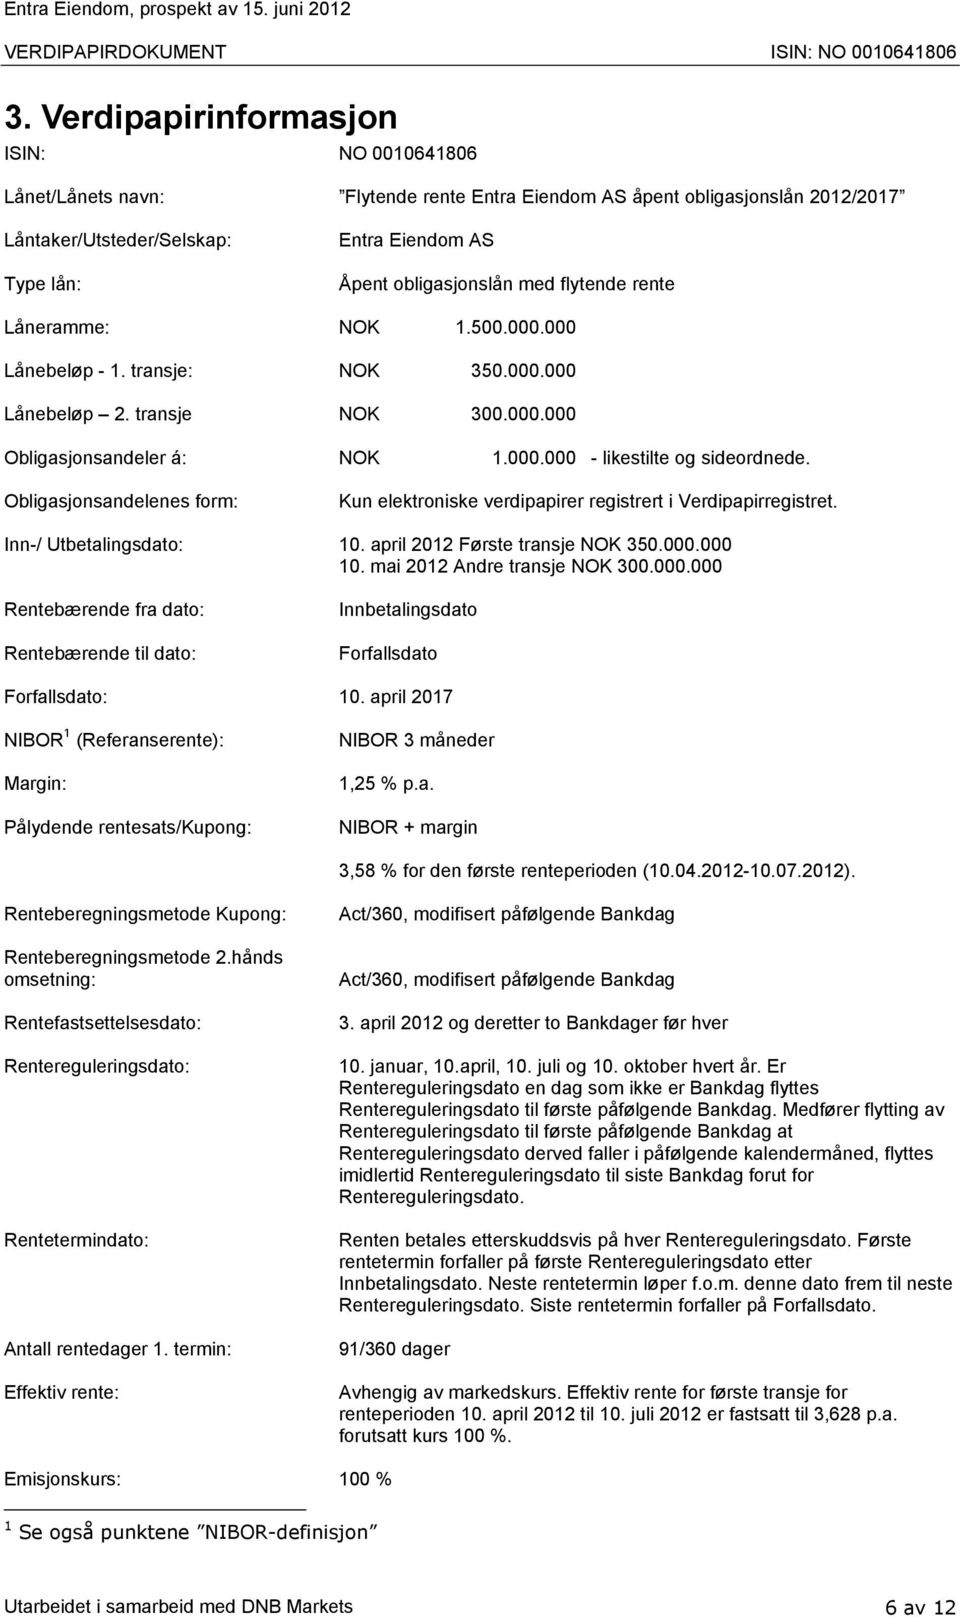 Obligasjonsandelenes form: Kun elektroniske verdipapirer registrert i Verdipapirregistret. Inn-/ Utbetalingsdato: 10. april 2012 Første transje NOK 350.000.